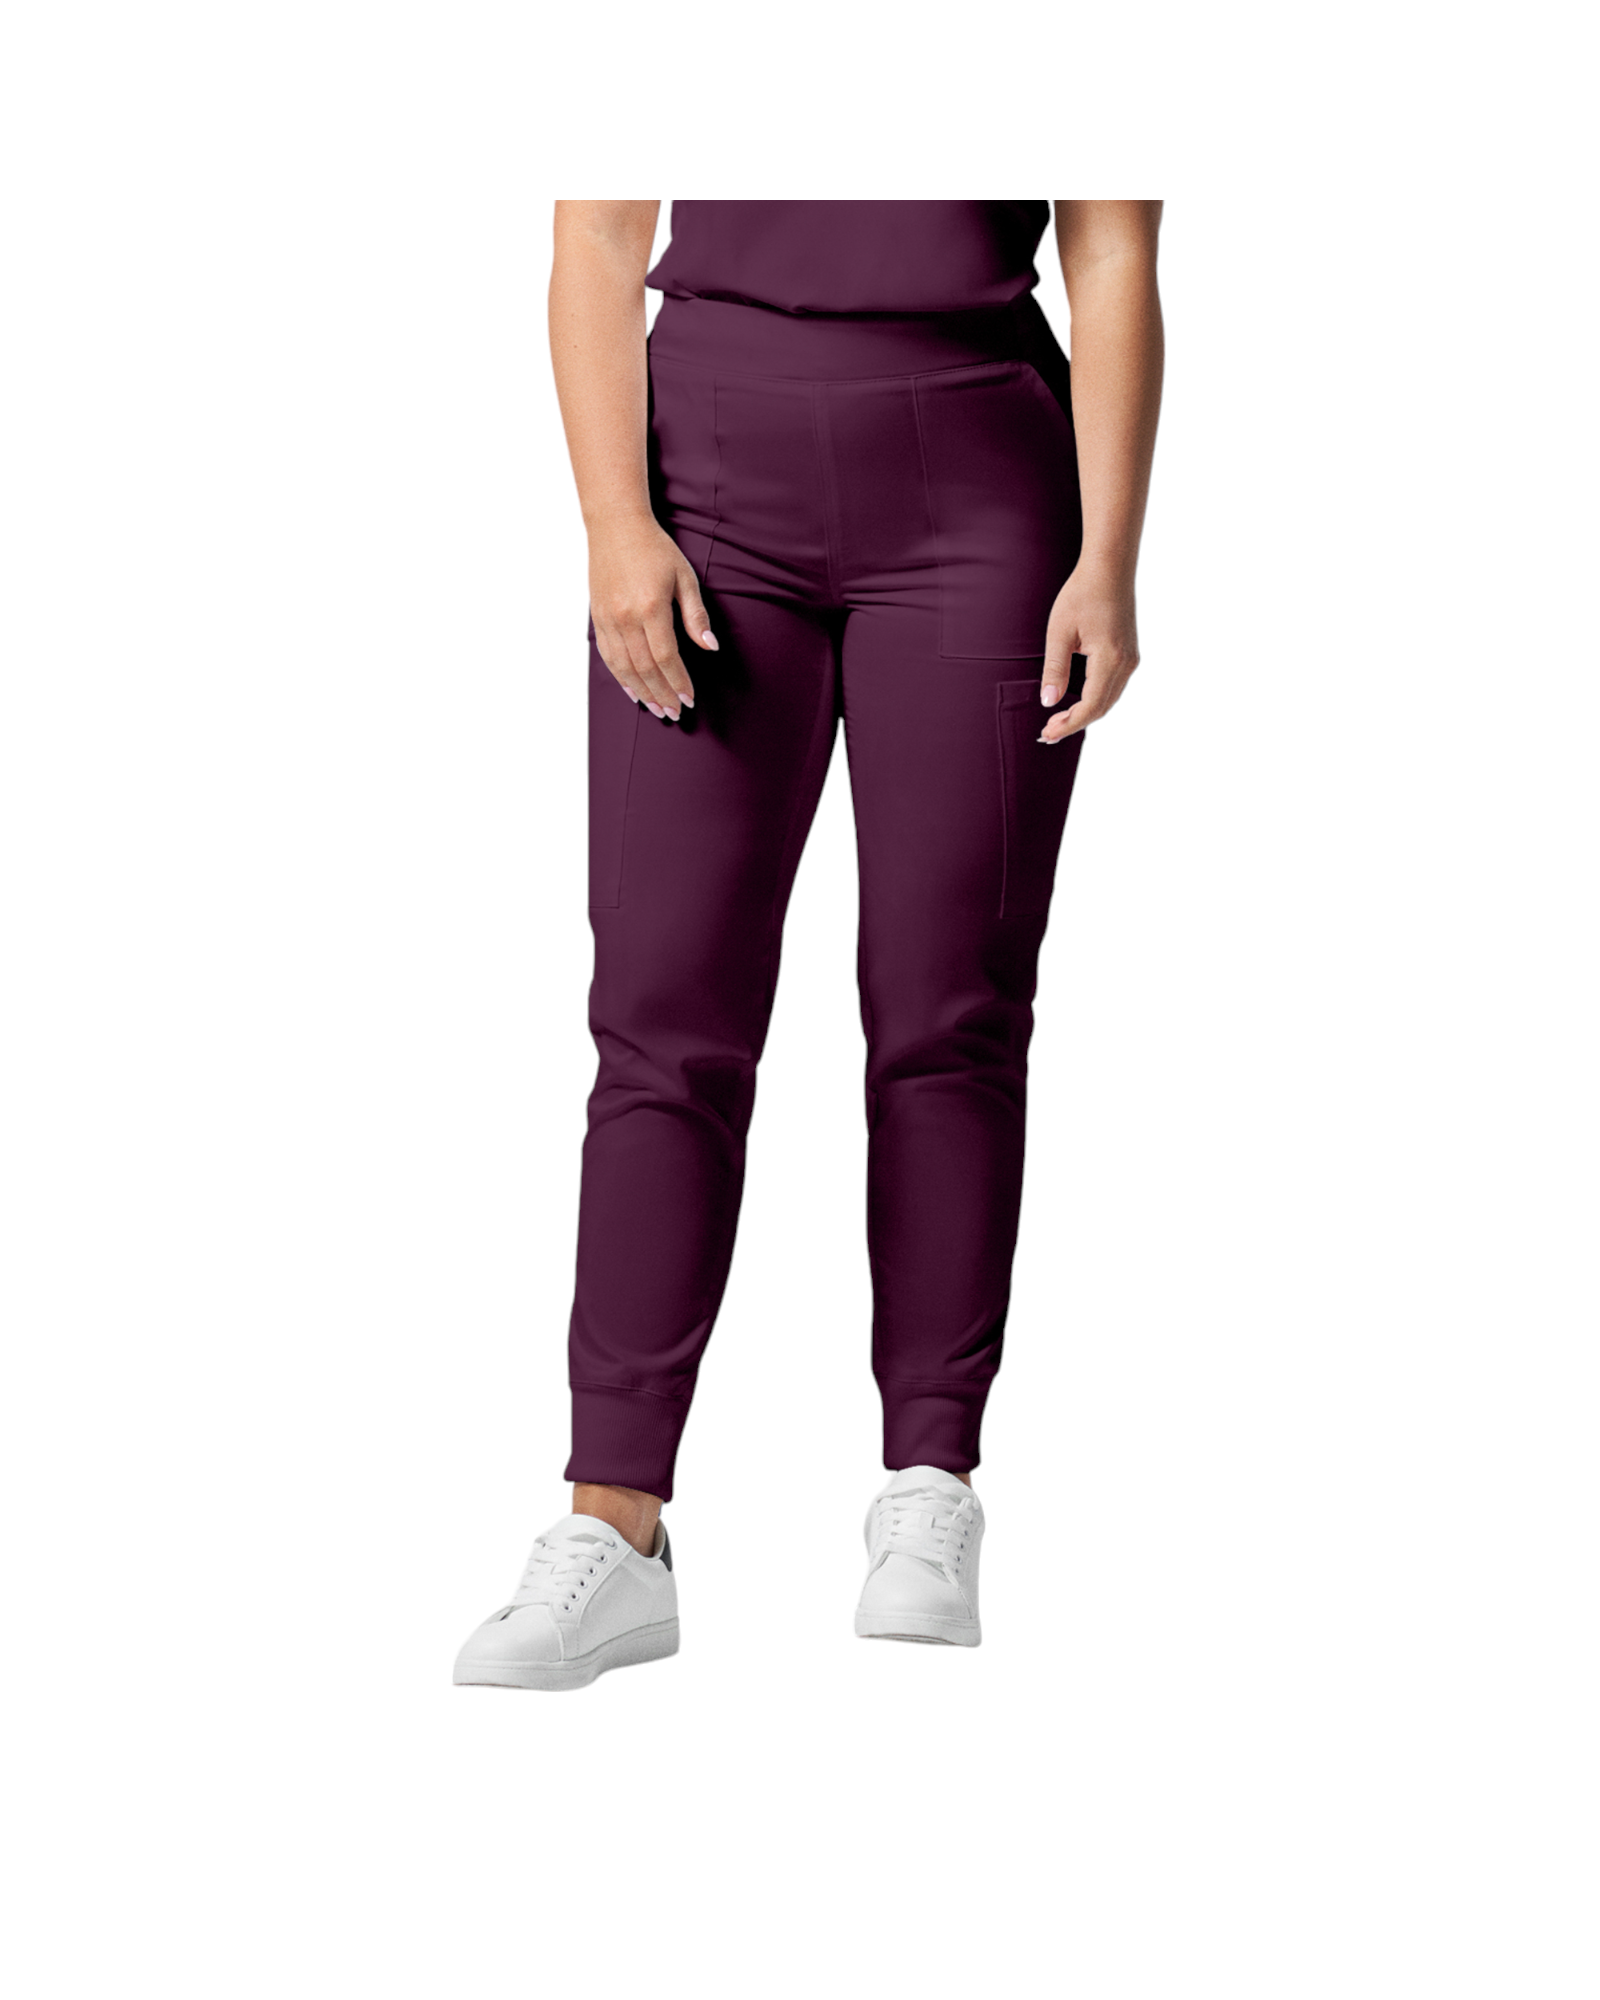 Pantalon de style jogger 6 poches pour femmes Landau Proflex #LB406-OS couleur Bourgogne